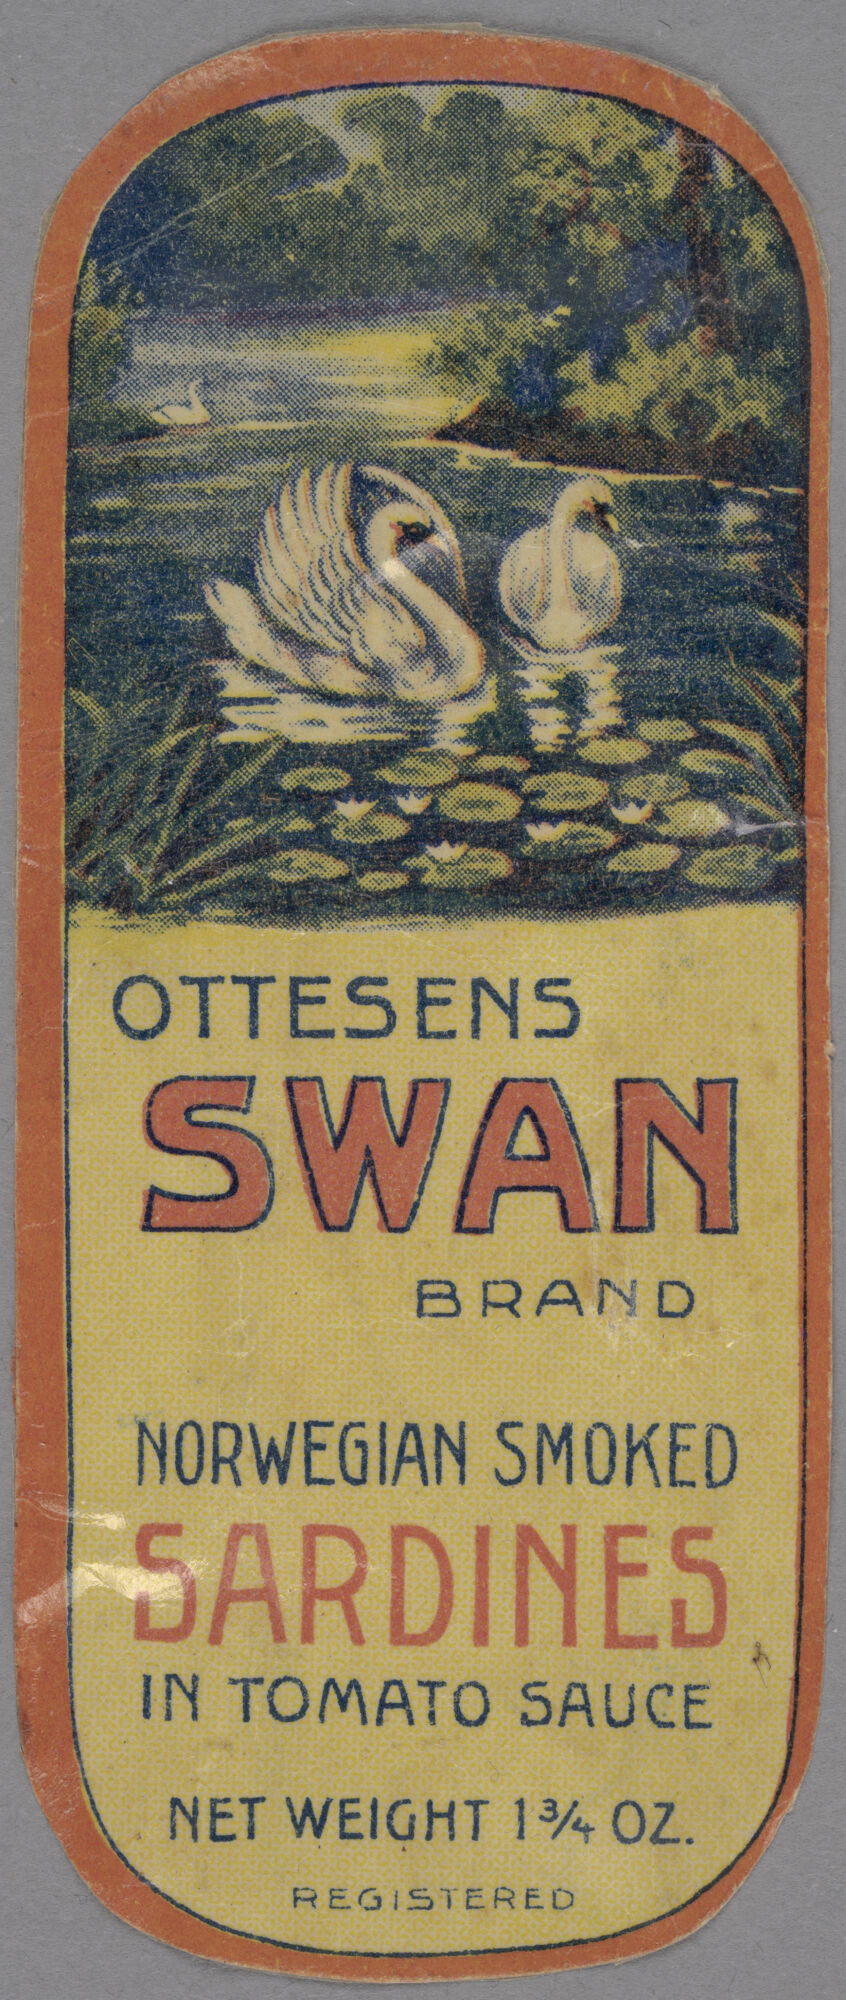 Verpakkingsetiket voor ingeblikte sardienen van het merk Ottesen Swan